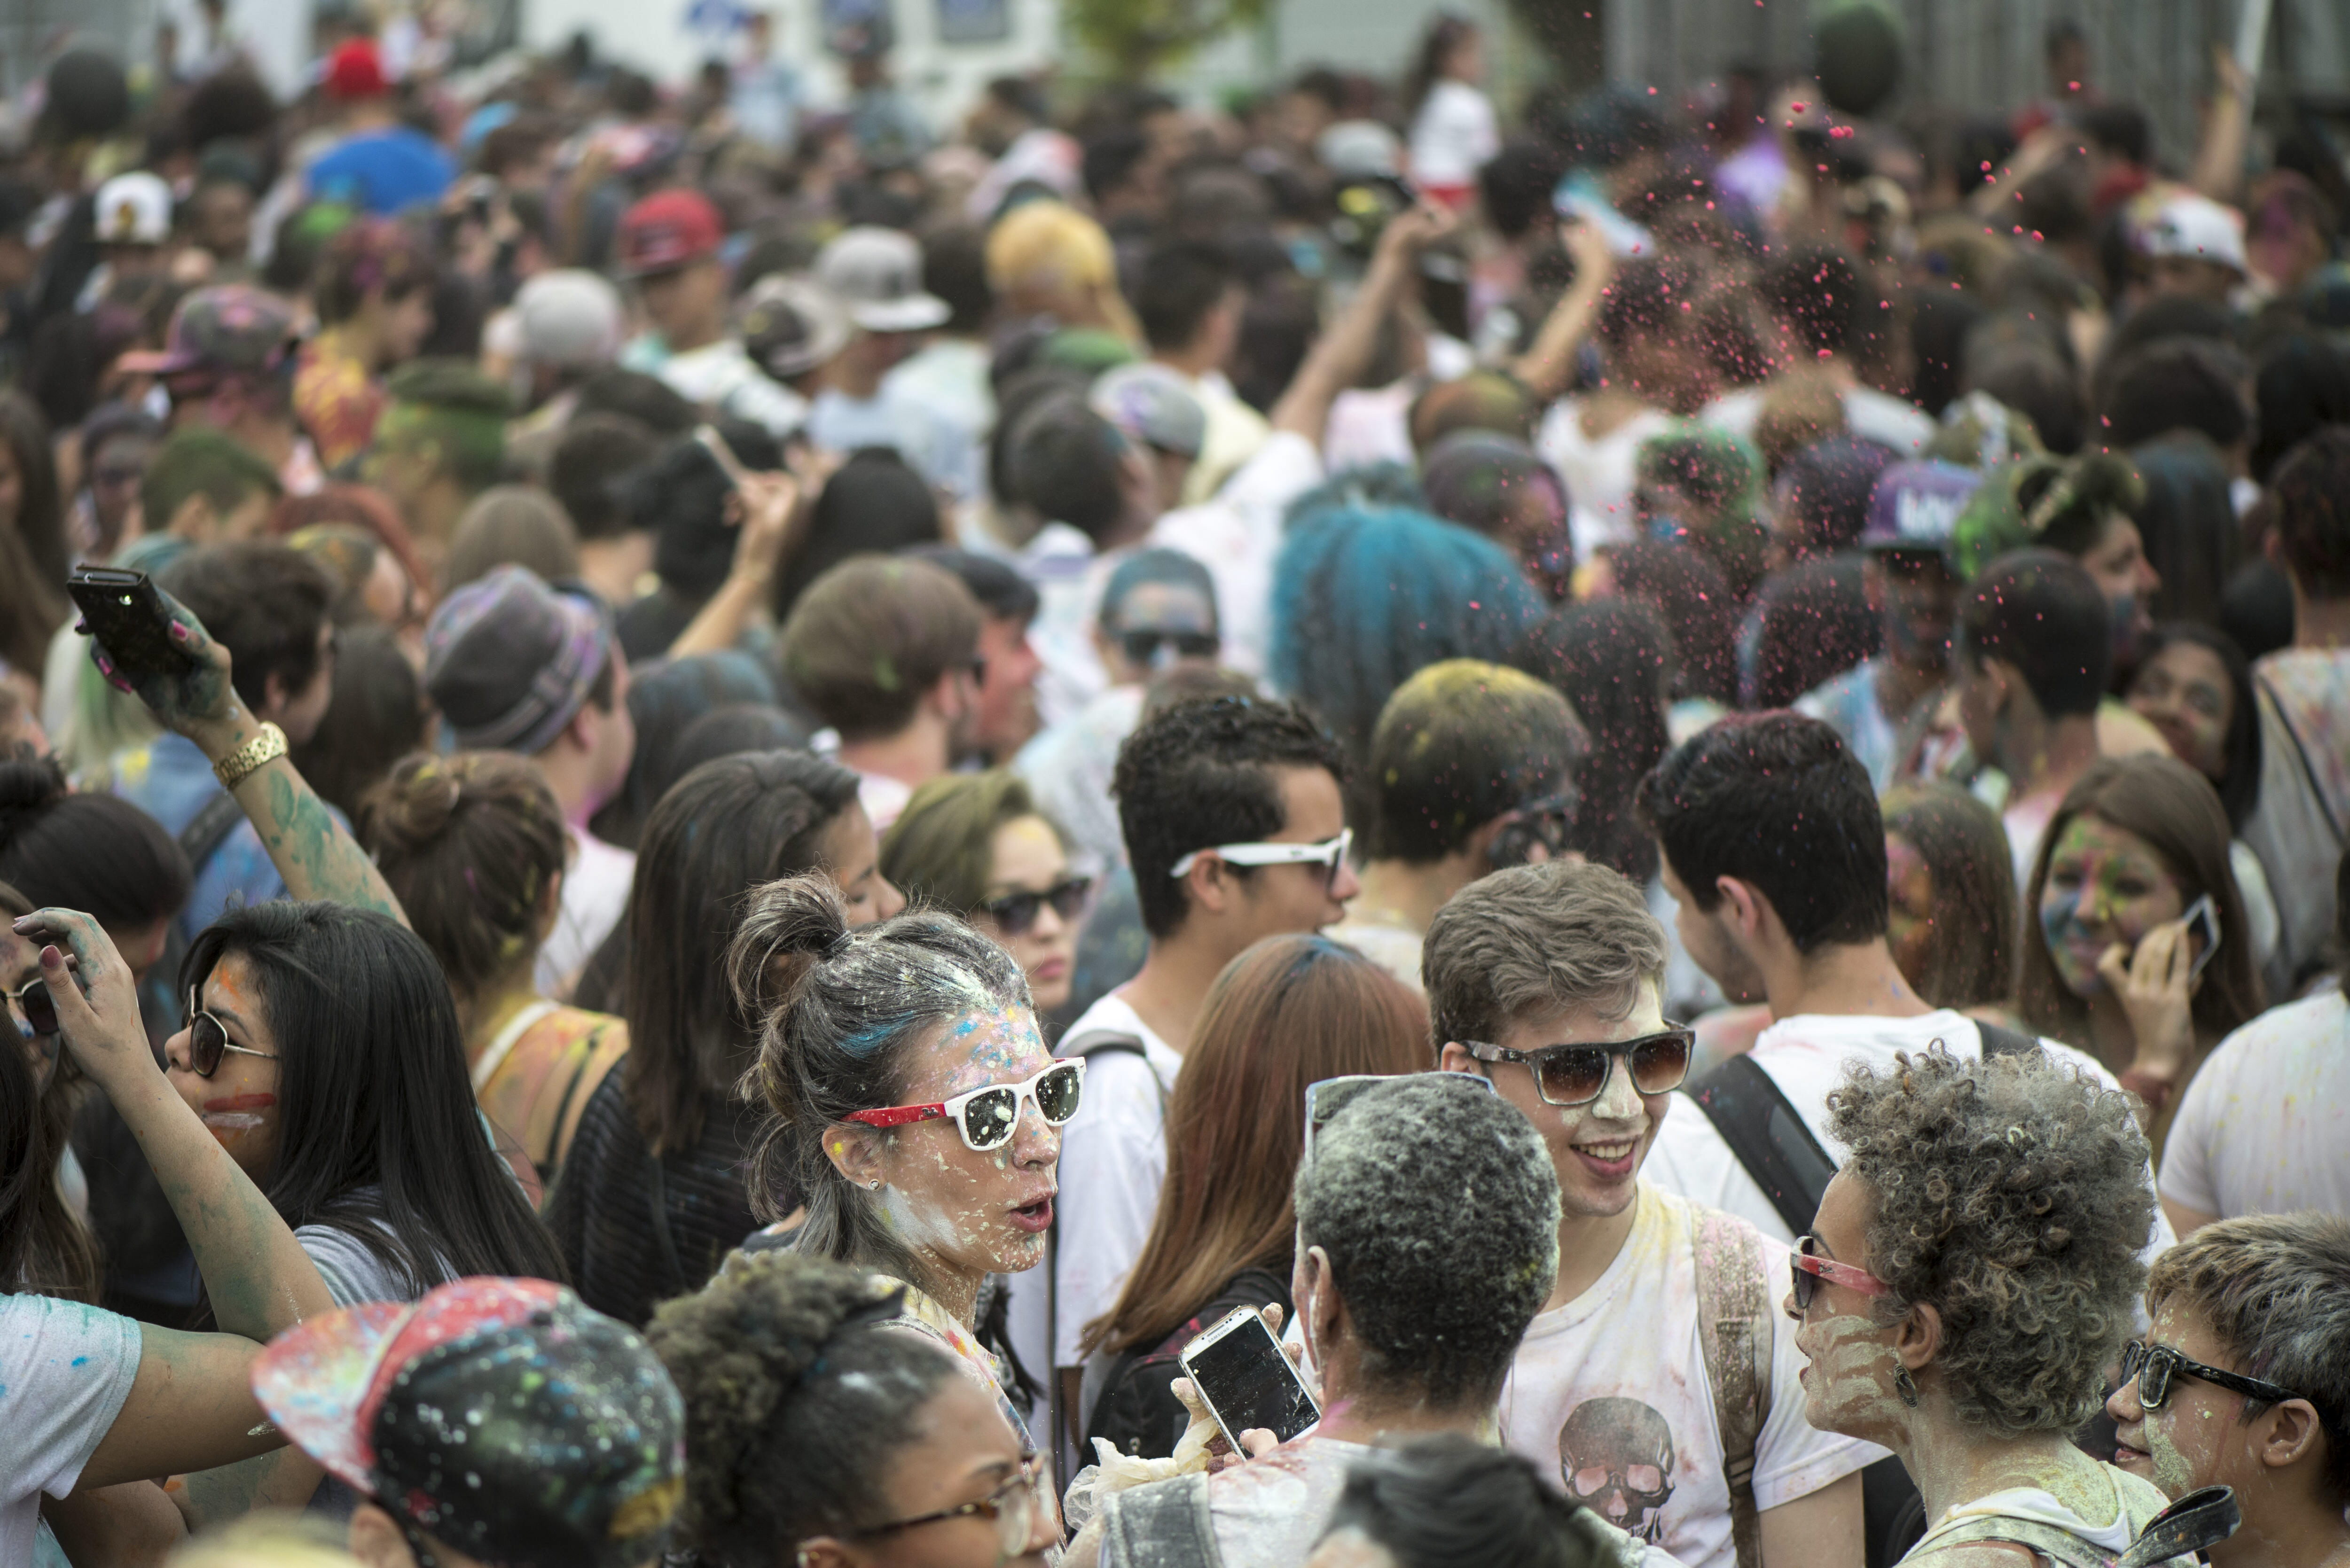 Así celebraron el Festival Holi de Colores en Brasil